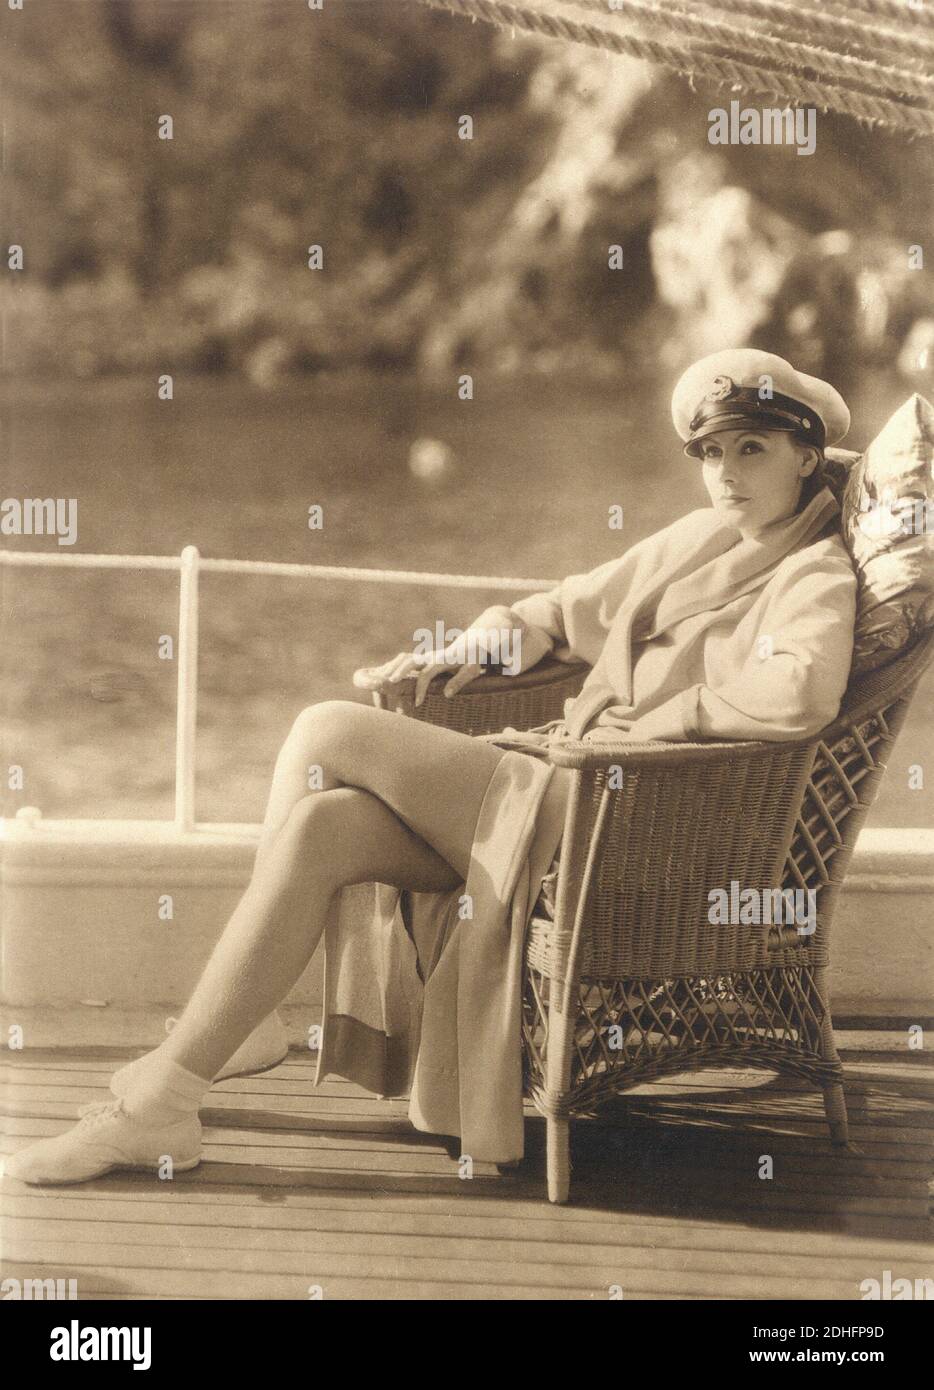 1929, USA: GRETA GARBO auf Catalina Island, Kalifornien, im EINZIGEN STANDARD (La Donna che ama) von John S. Robertson, aus der Romantik von Adela Rogers St. Johns, Kostümkleid von ADRIAN - MGM - Metro Goldwyn Mayer - FILM - HOLLYWOOD - KINO - FILM - Schauspielerin - Attrice - accappatoio - Bademantel - Bademantel - Bademantel - vimini Stuhl - poltrona - cappello da marinaio - marine Hut - langbeinige Pose - Gambe - Yacht - barca - Nave - marinaio - Seemann - Scarpe da Tennis ginnastica - weißes Kleid - abito vestito bianco lässig ---- Archivio GBB Stockfoto